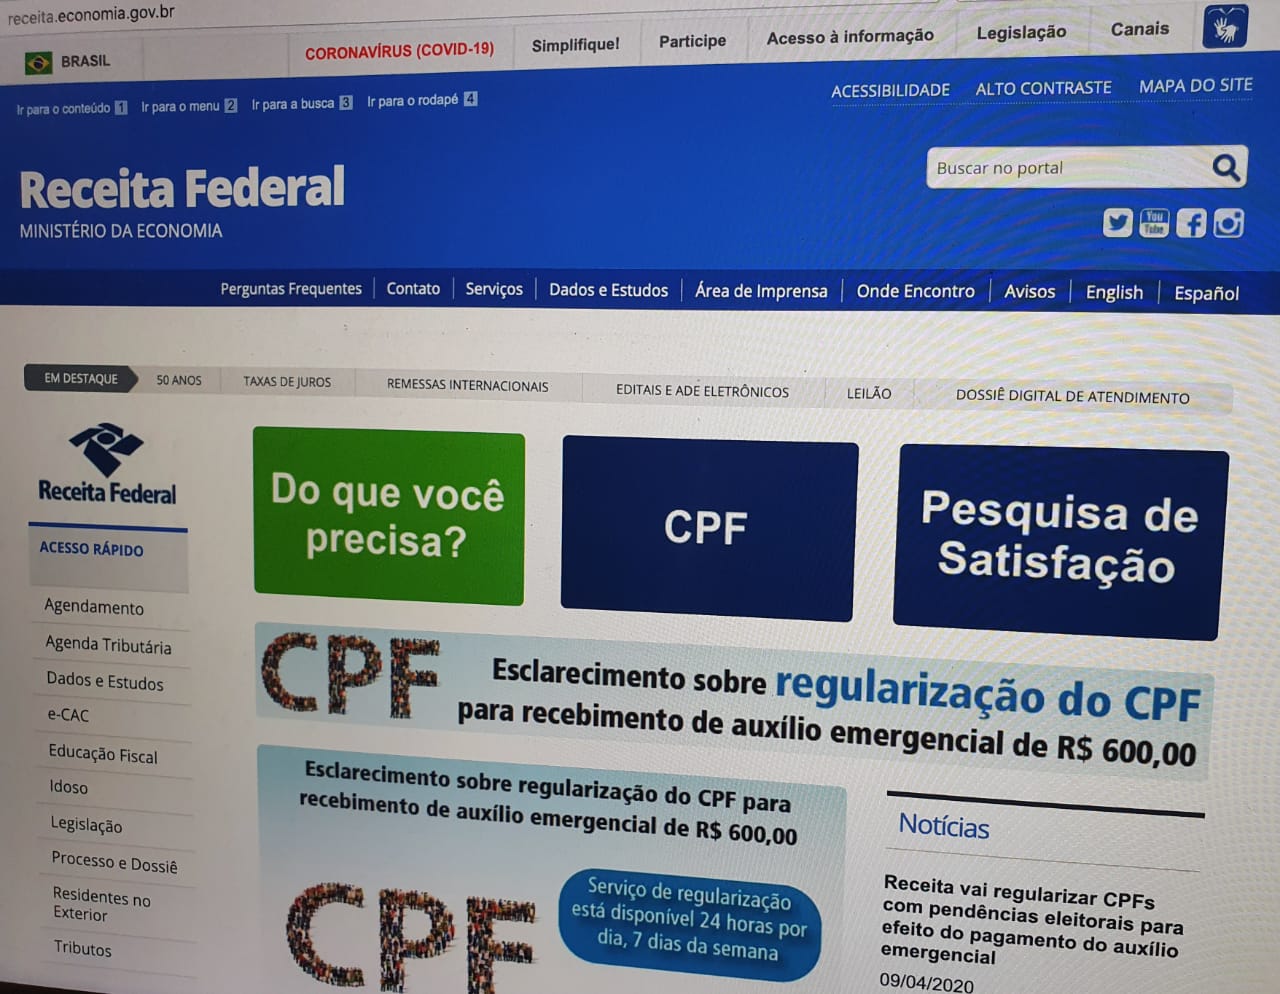 CPF – Documento pode ser obtido nos Correios e regularização também pode ser feita no site da Receita Federal